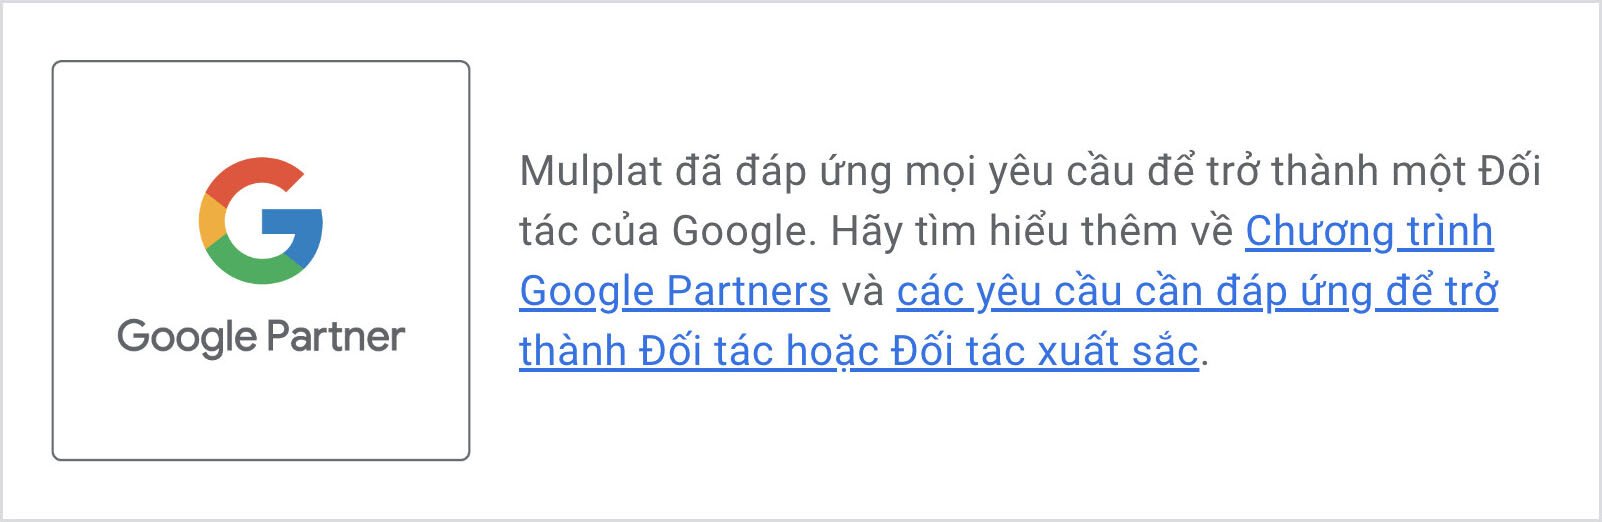 Mulplat tự hào là đối tác của Google